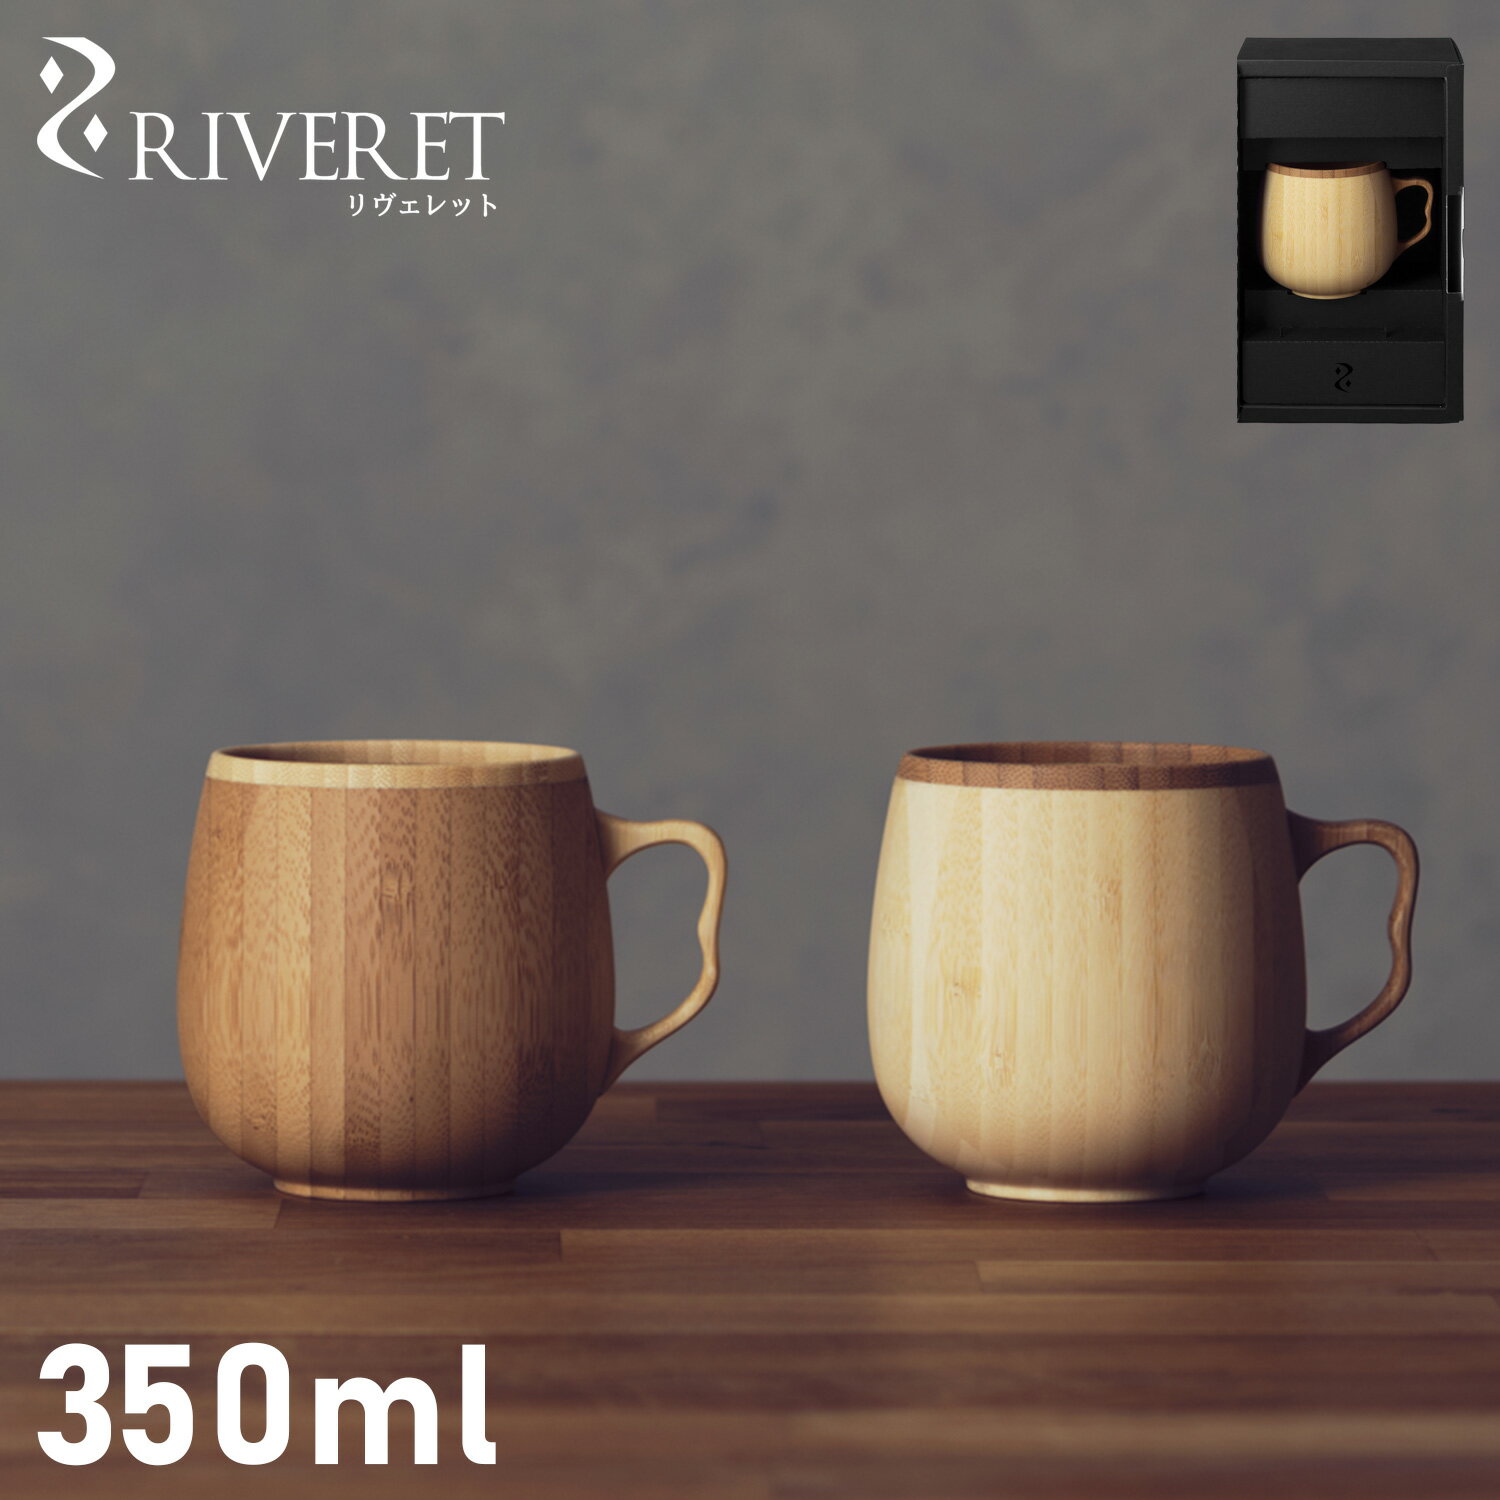 リヴェレット RIVERET マグカップ コーヒーカップ 350ml 天然素材 日本製 軽量 食洗器対応 リベレット CAFE AU LAIT MUG ホワイト ブラウン 白 RV-205 母の日